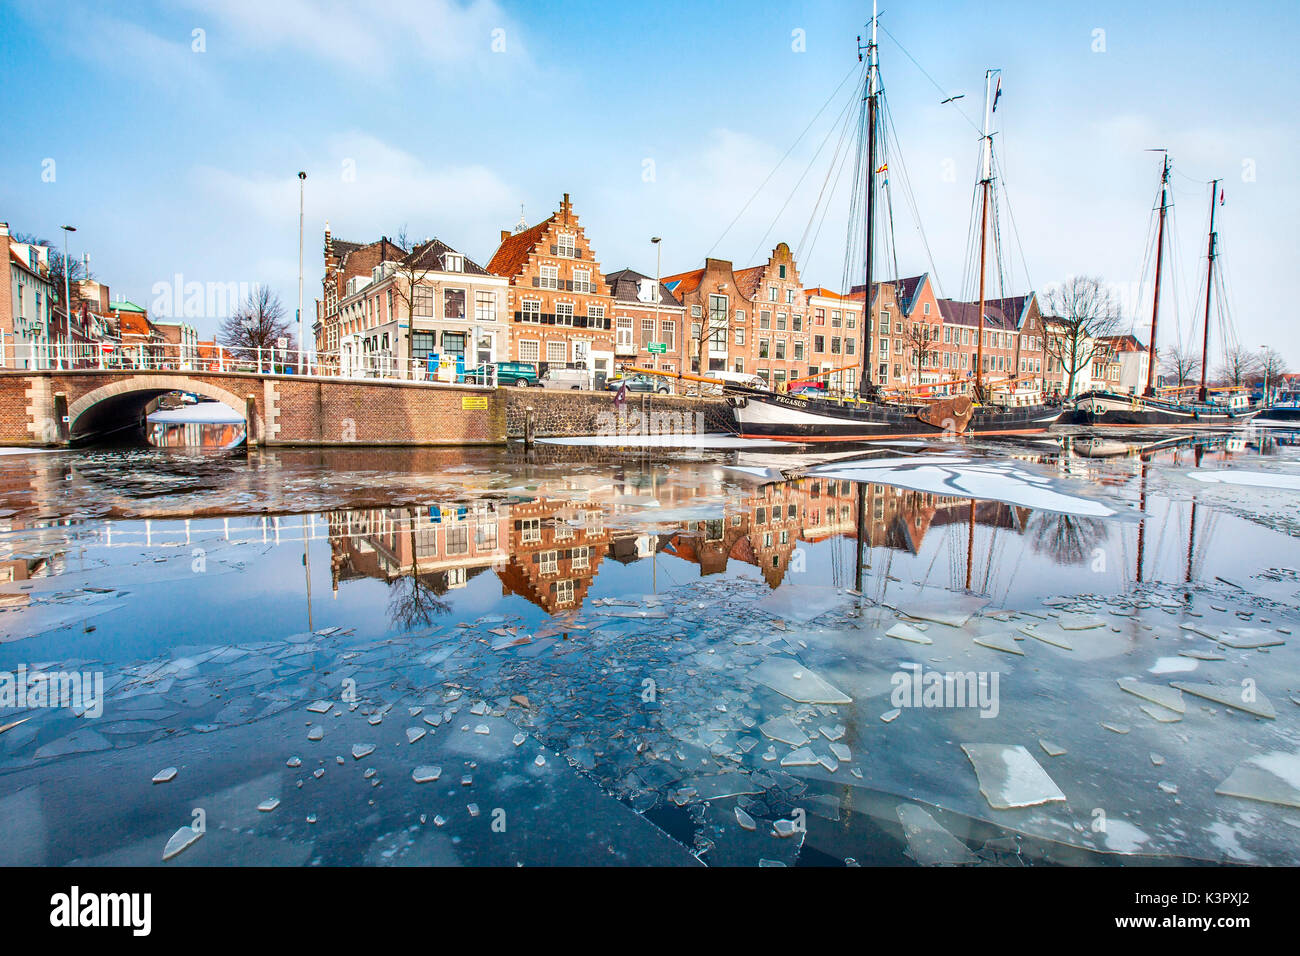 Bâtiments de Harleem reflétant dans la rivière Spaarne à moitié gelé, à environ 20 km d'Amsterdam, Hollande, Pays Bas Europe Banque D'Images